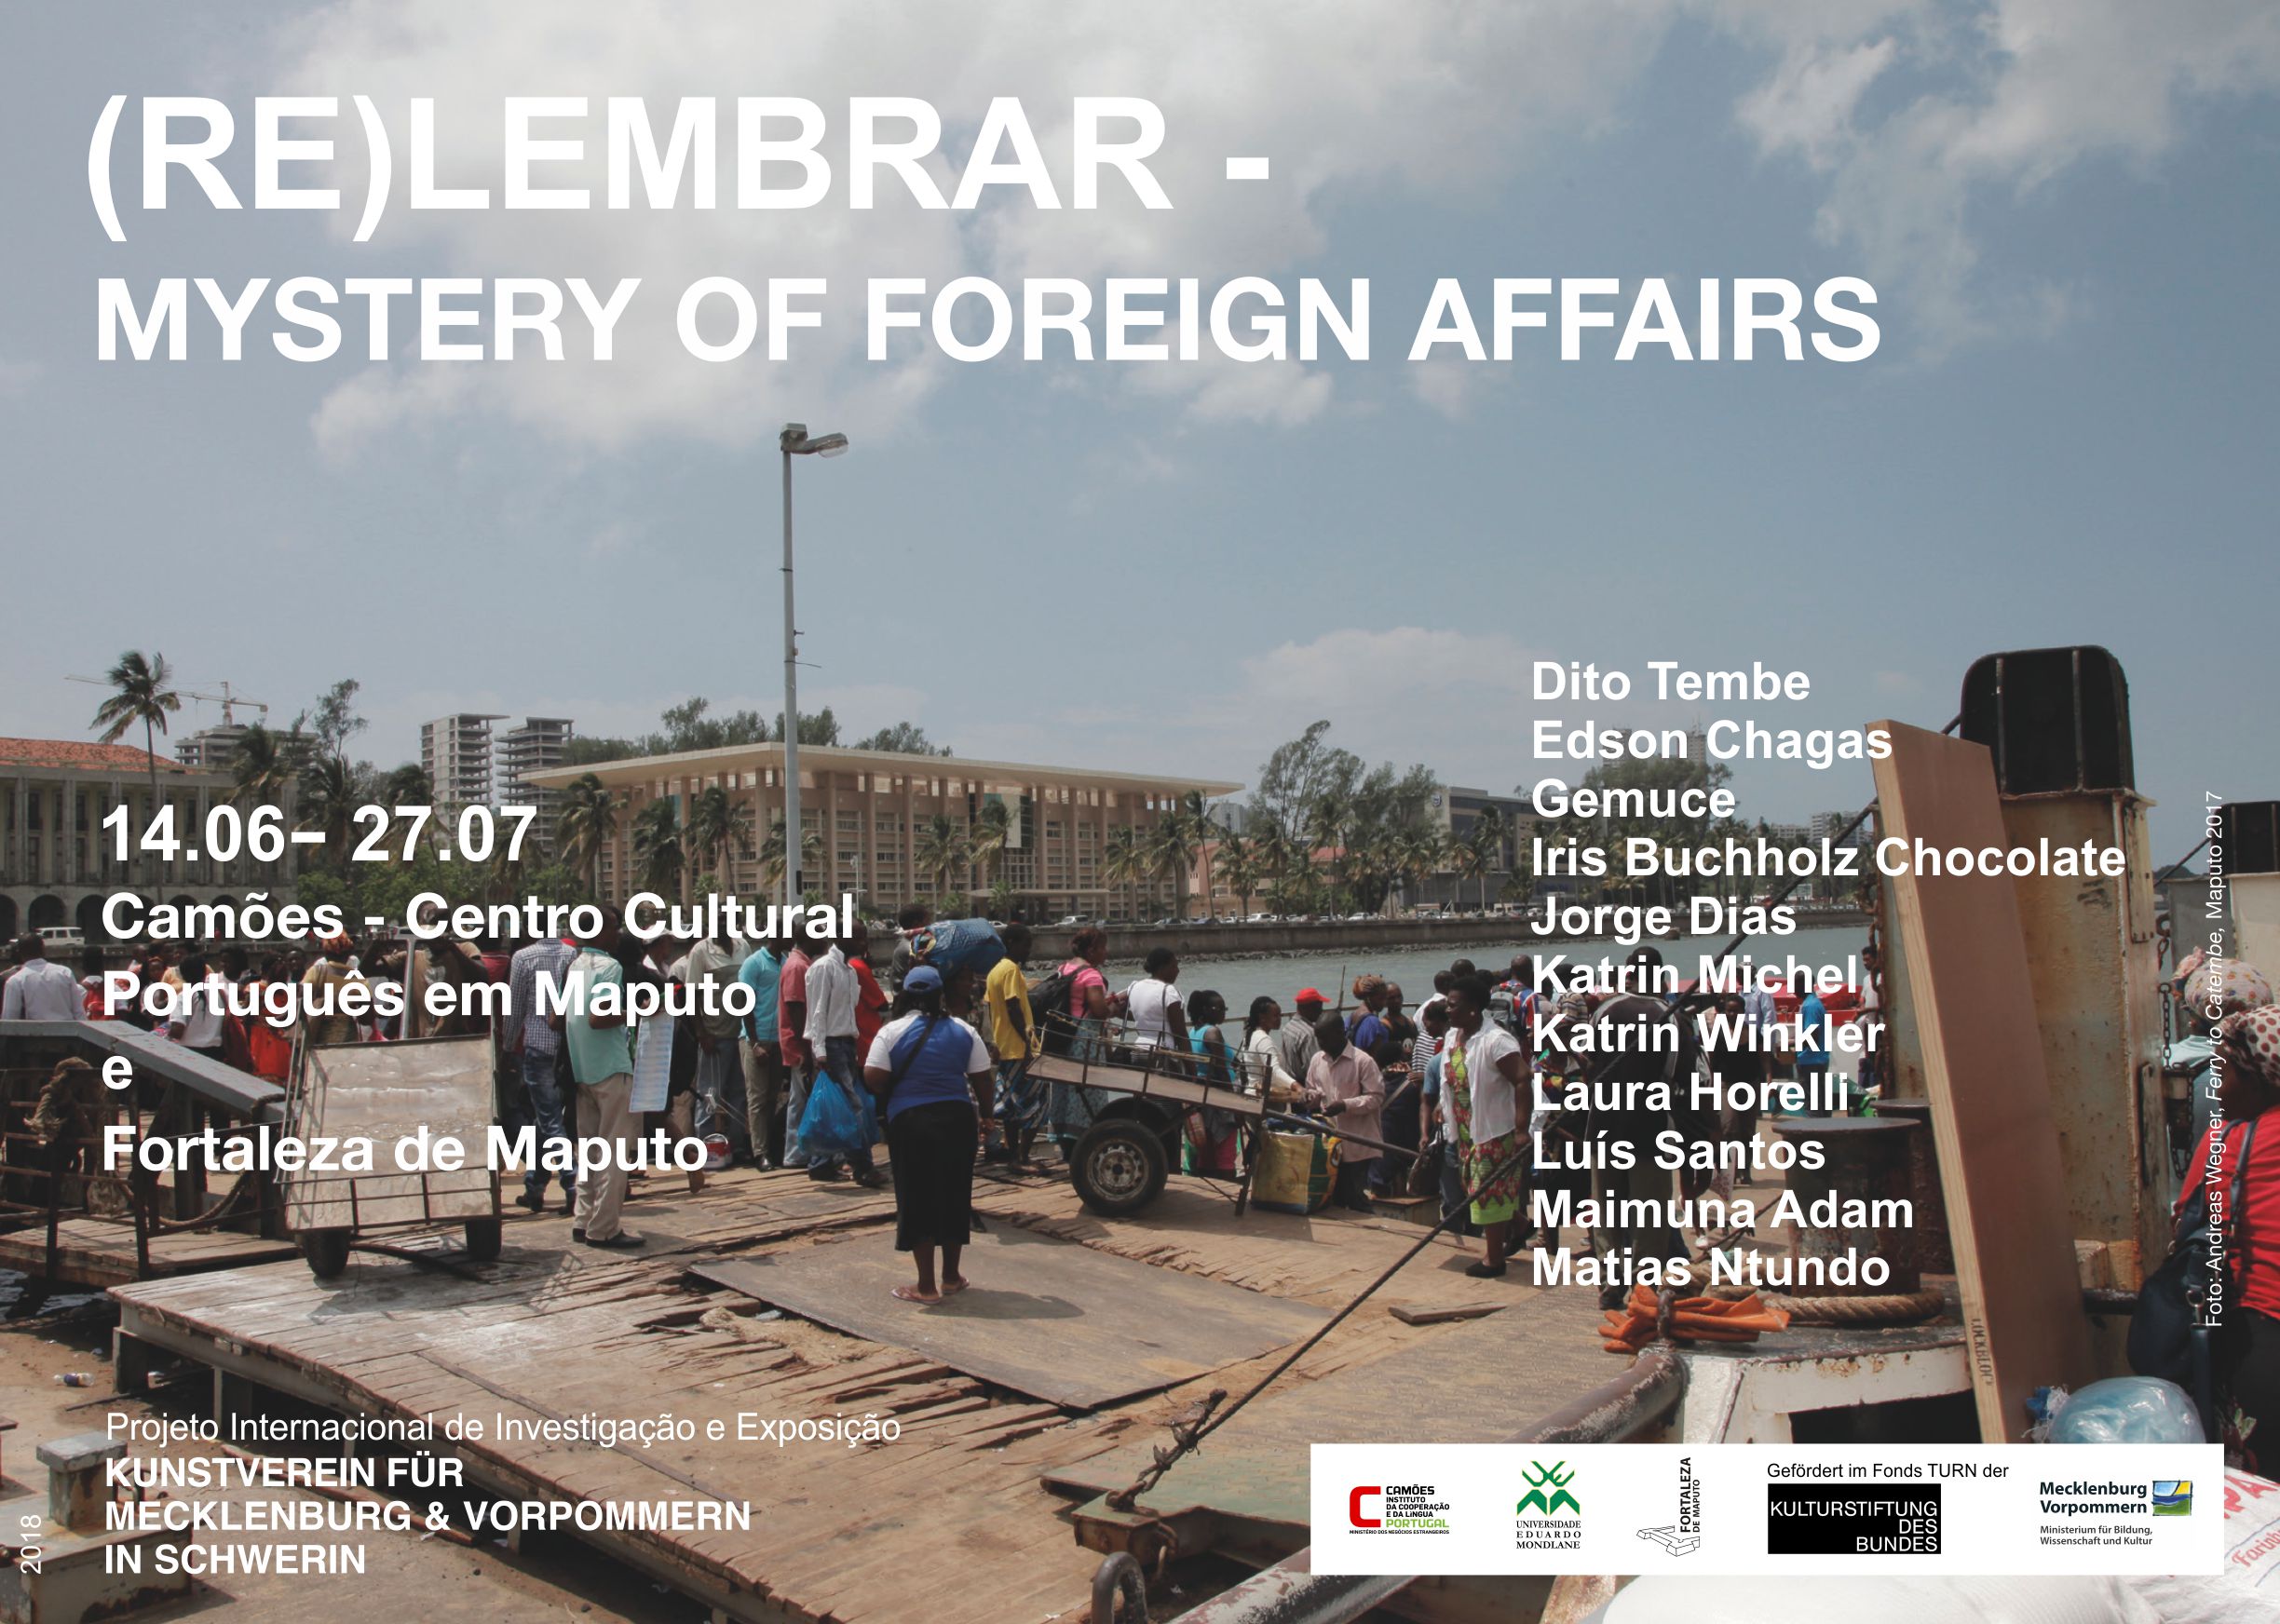 Inauguração 14 de junho: às 17h00 na Fortaleza de Maputo e às 18h30 no Camões – Centro Cultural Português em Maputo